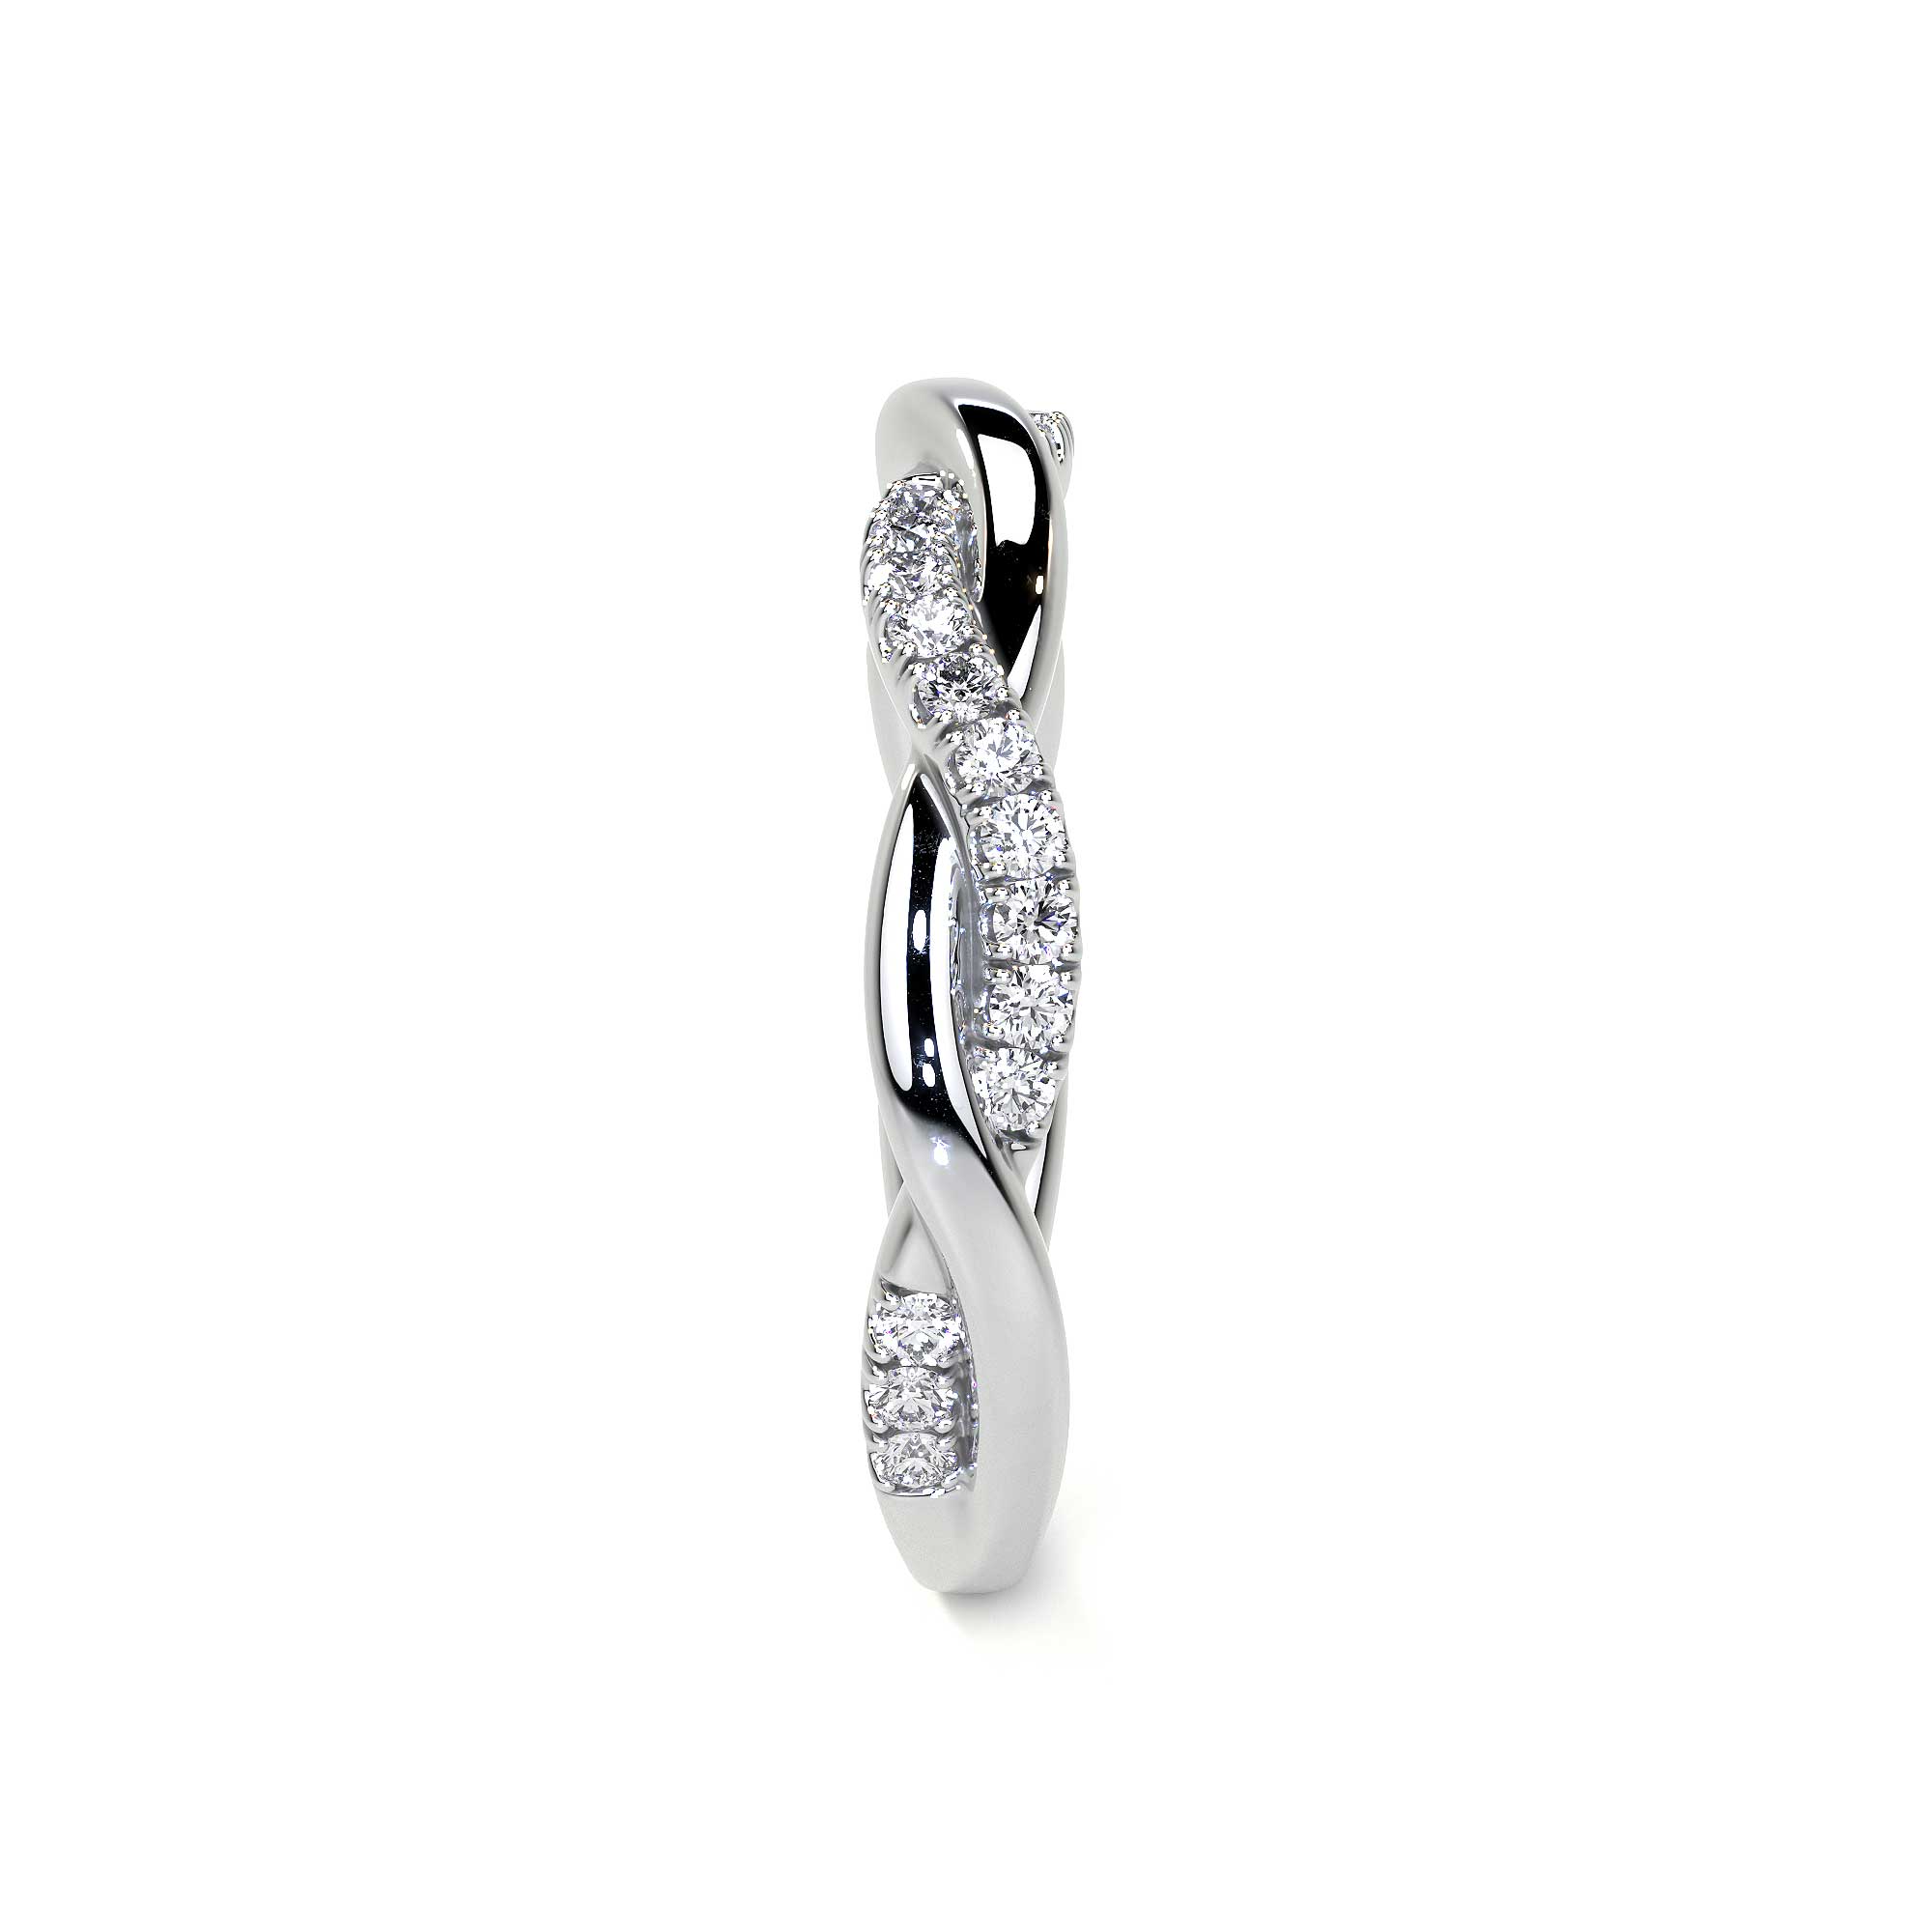 Twirl Ring with Diamond Pave - Rings - Leviev Diamonds